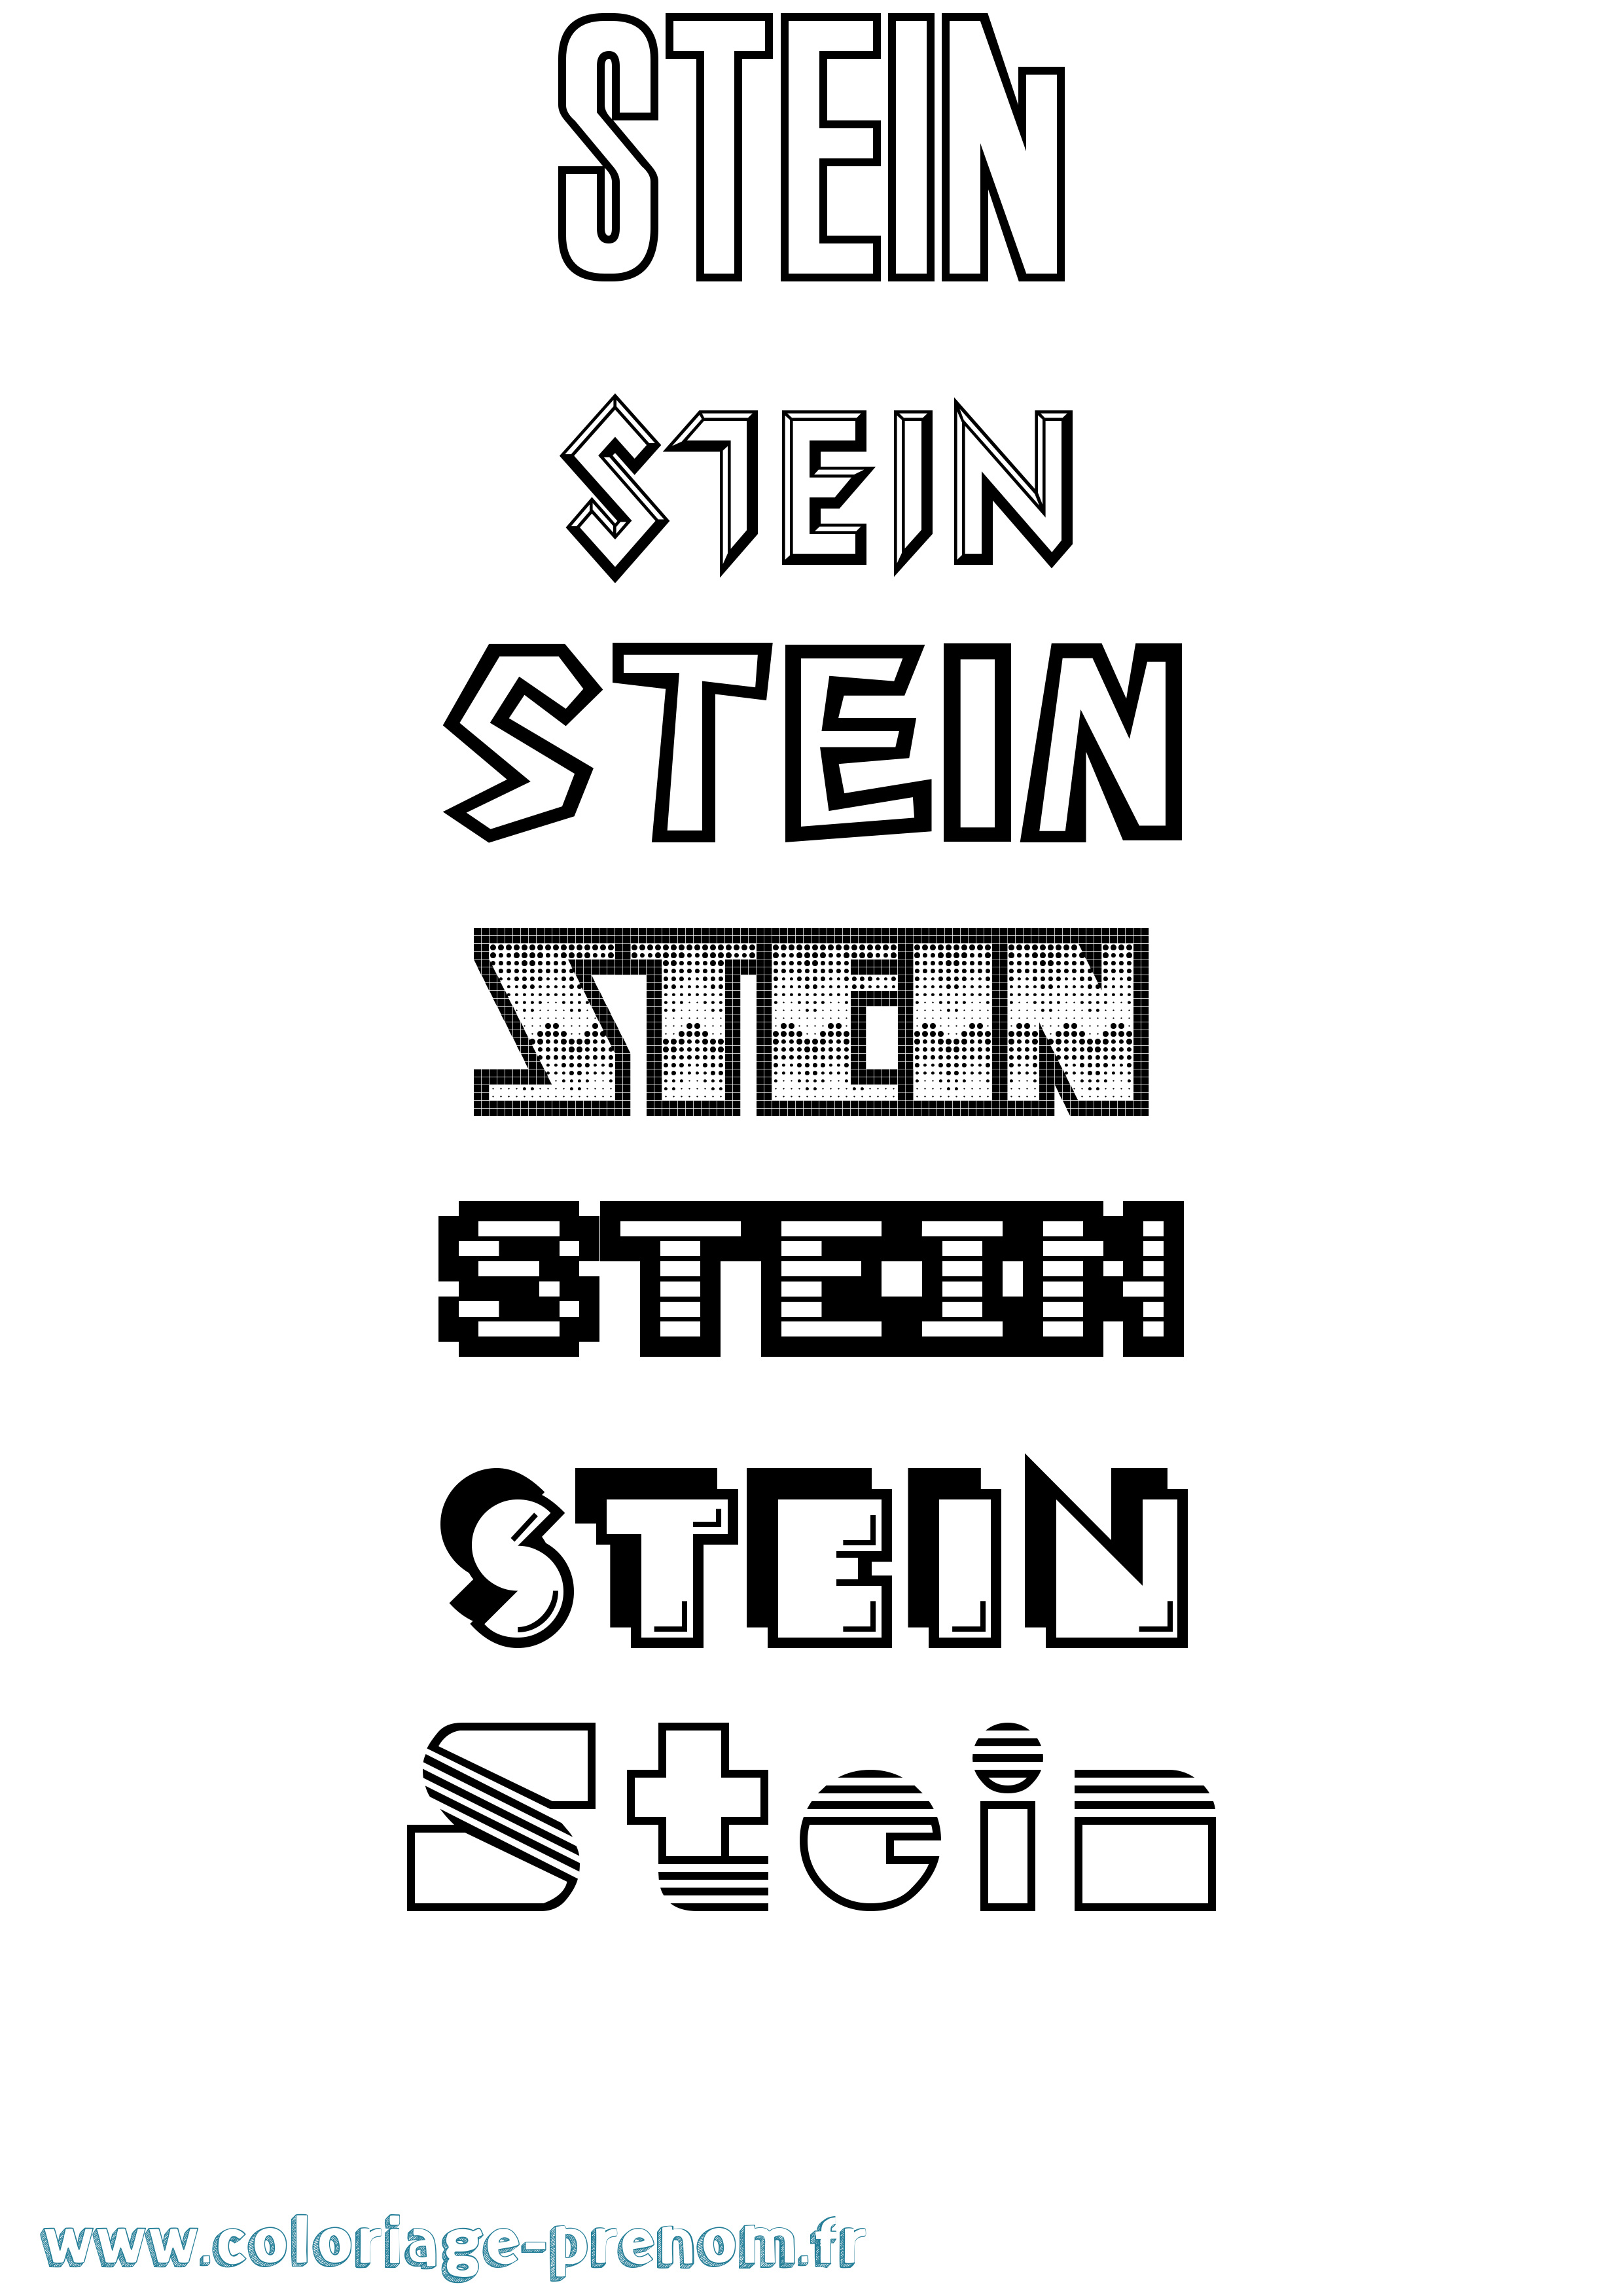 Coloriage prénom Stein Jeux Vidéos